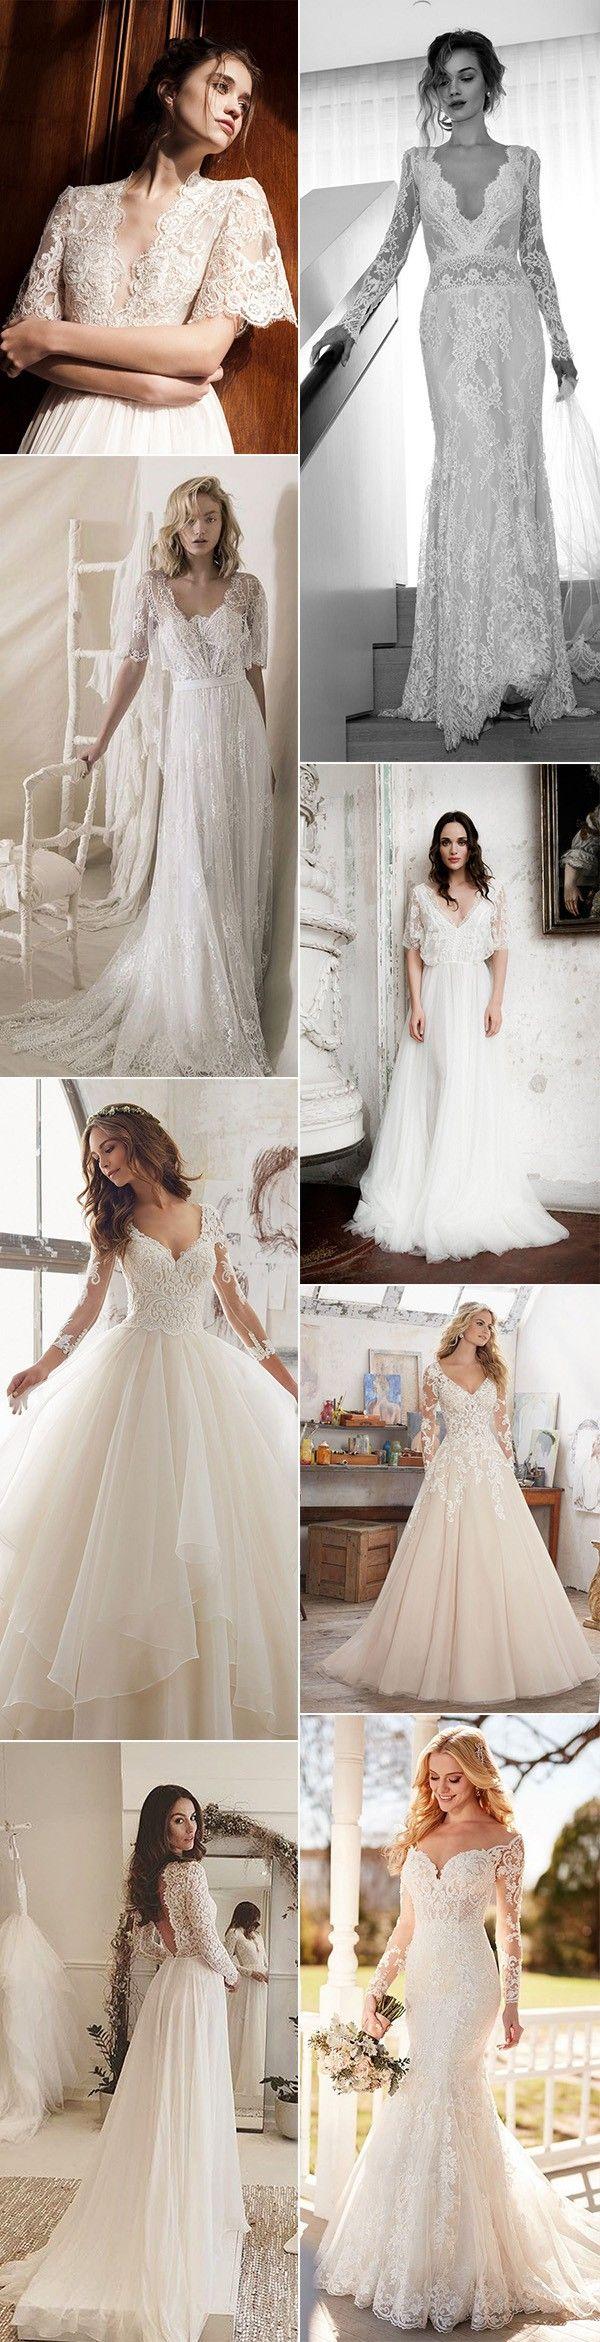 زفاف - Top 10 Gorgeous Wedding Dresses With Long Sleeves For 2018 Trends